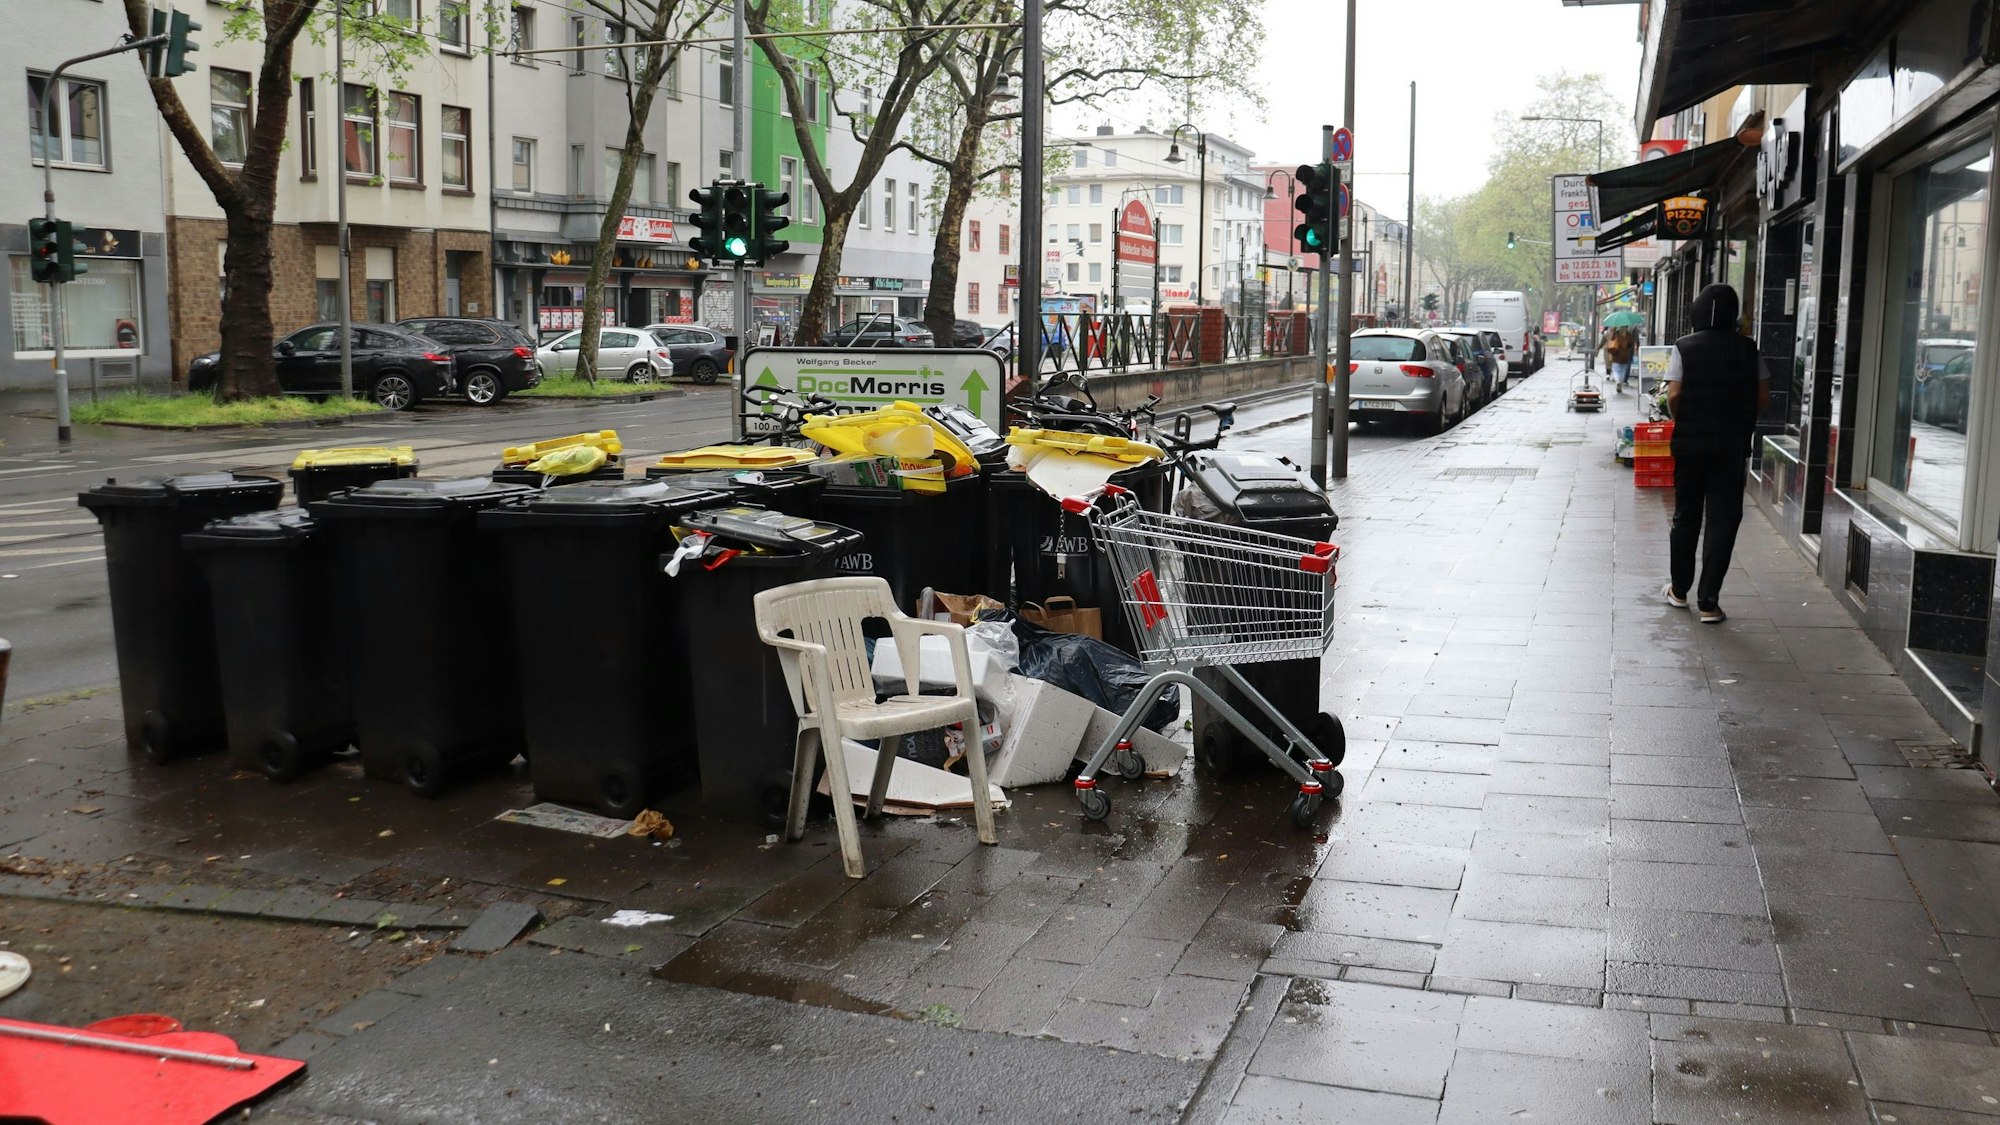 Auf einem Bürgersteig an einer belebten Straße mit Stadtbahn-Haltestelle stehen viele Mülltonnen, daneben weggeworfene Plastikstühle und ein leerer Einkaufswagen.